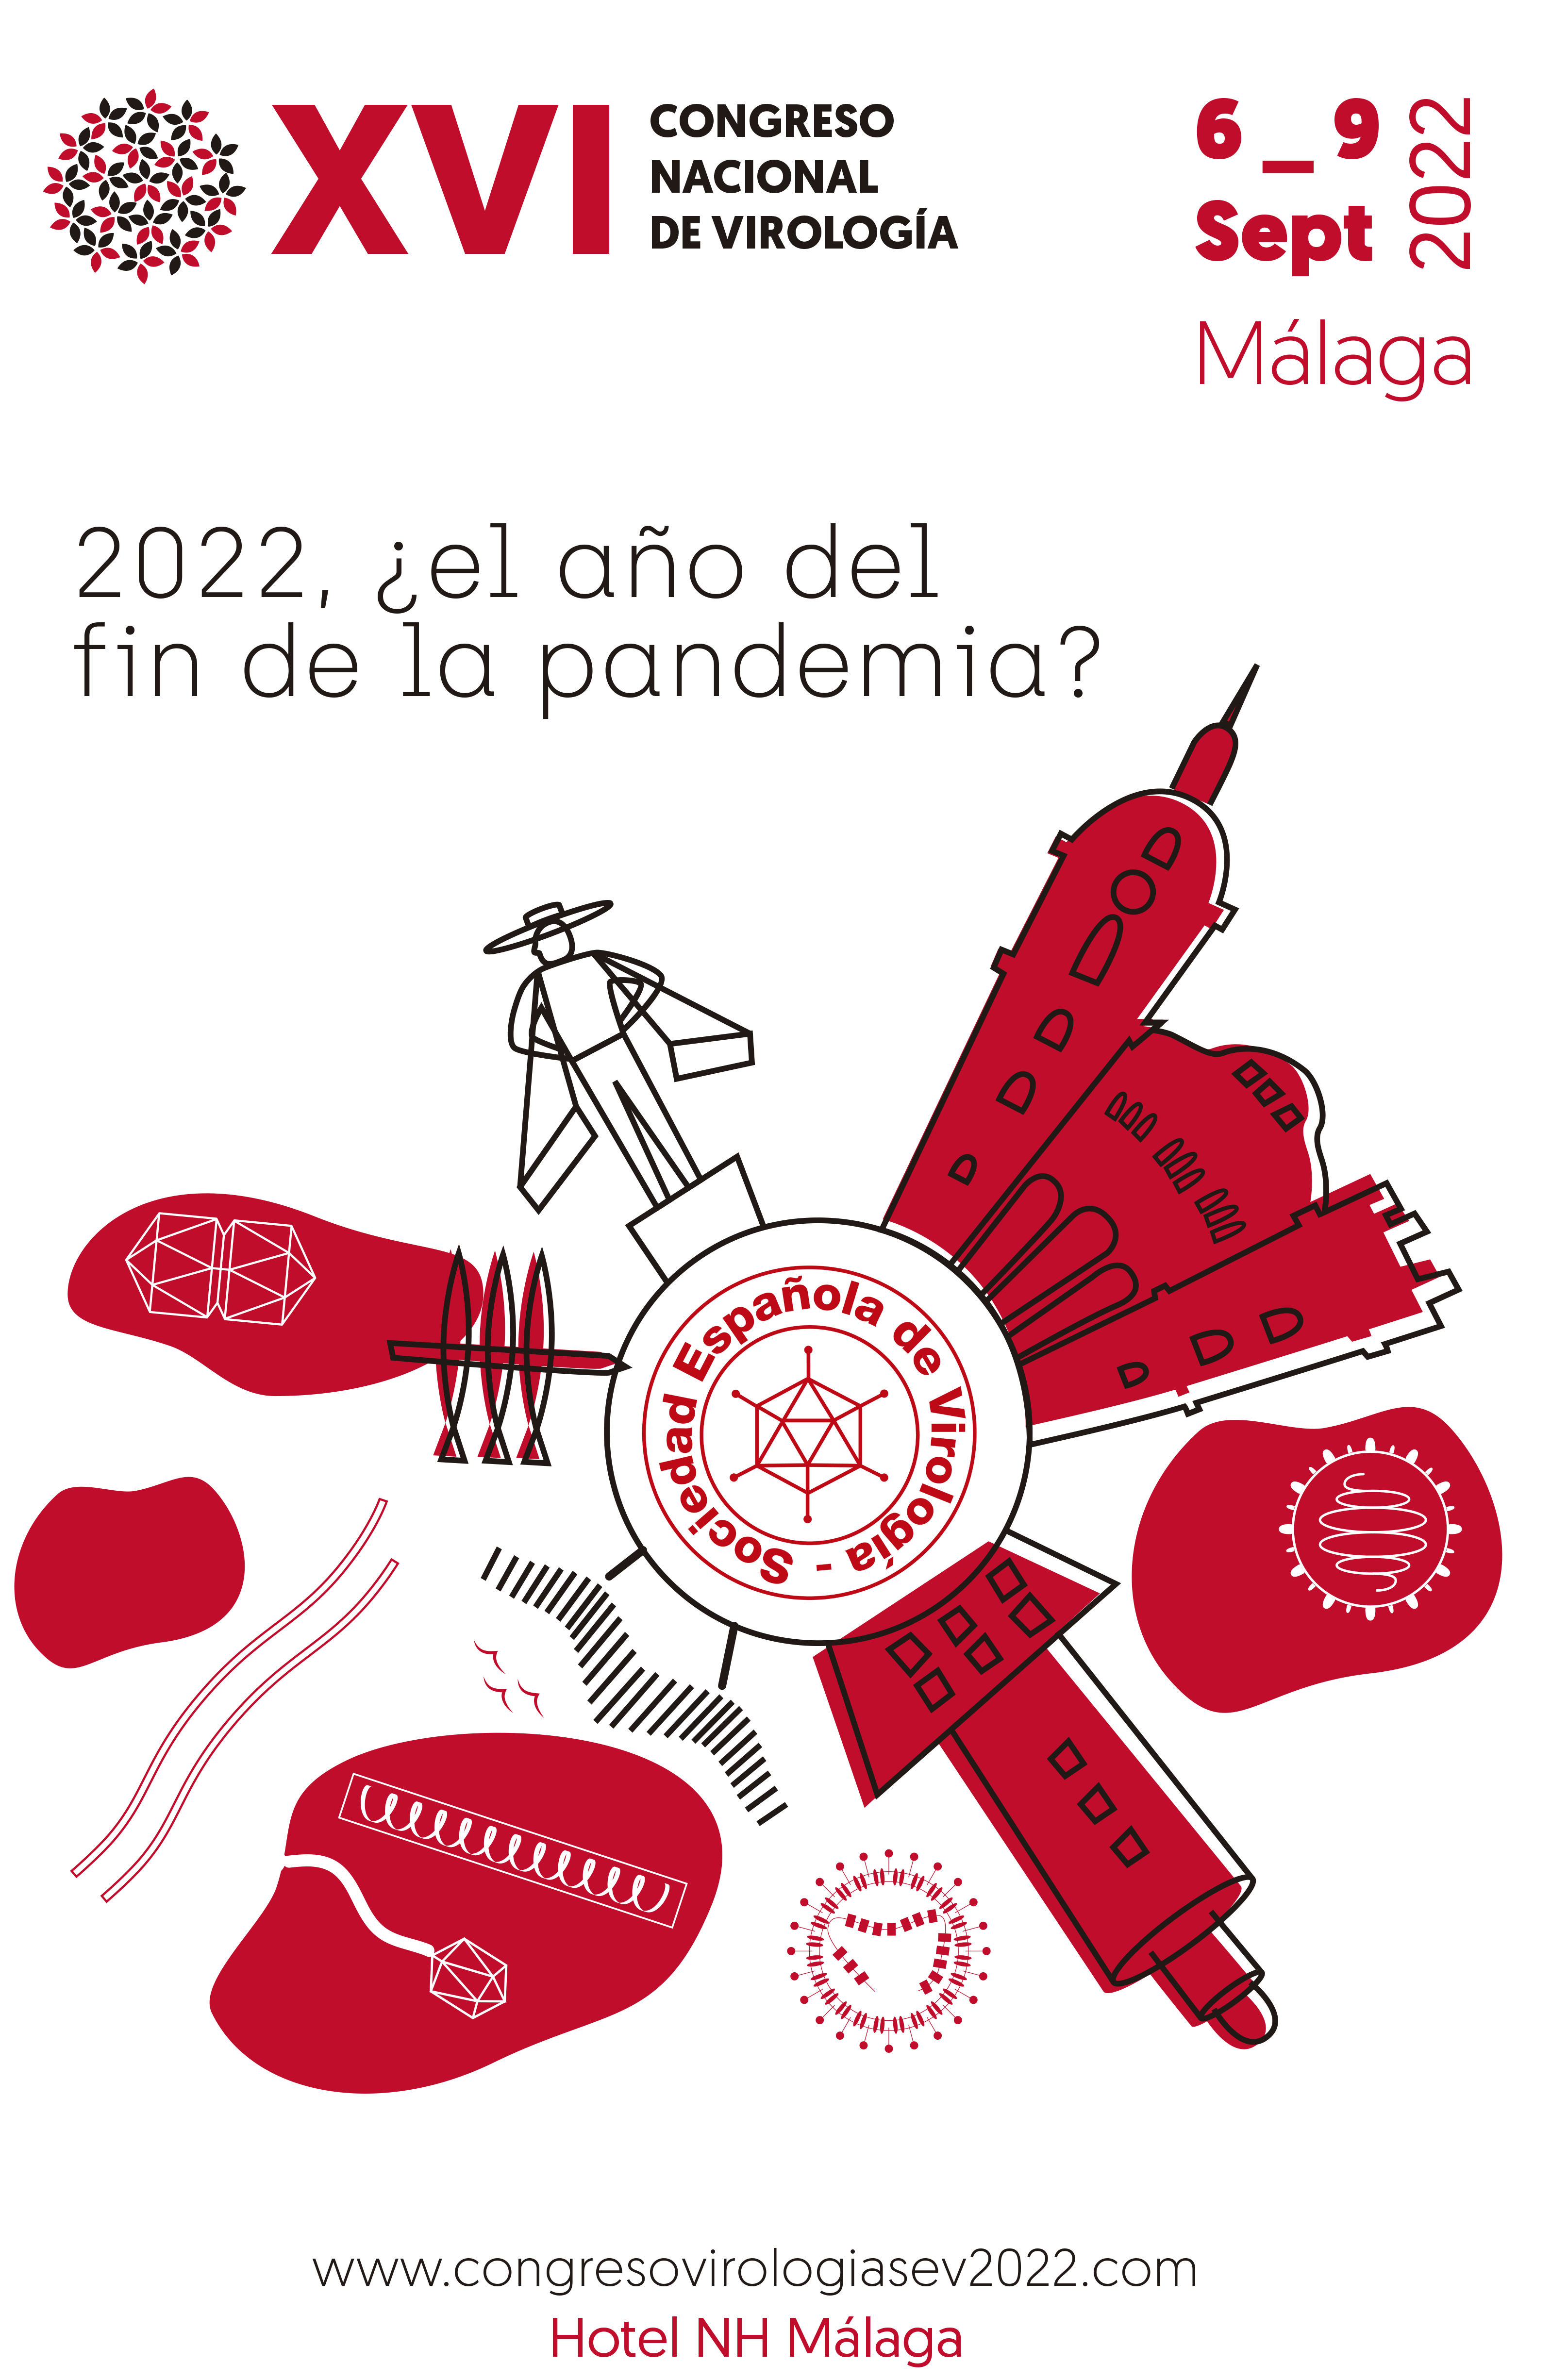 XVI CONGRESO NACIONAL DE VIROLOGÍA. Málaga, del 6 al 9 de septiembre de 2022